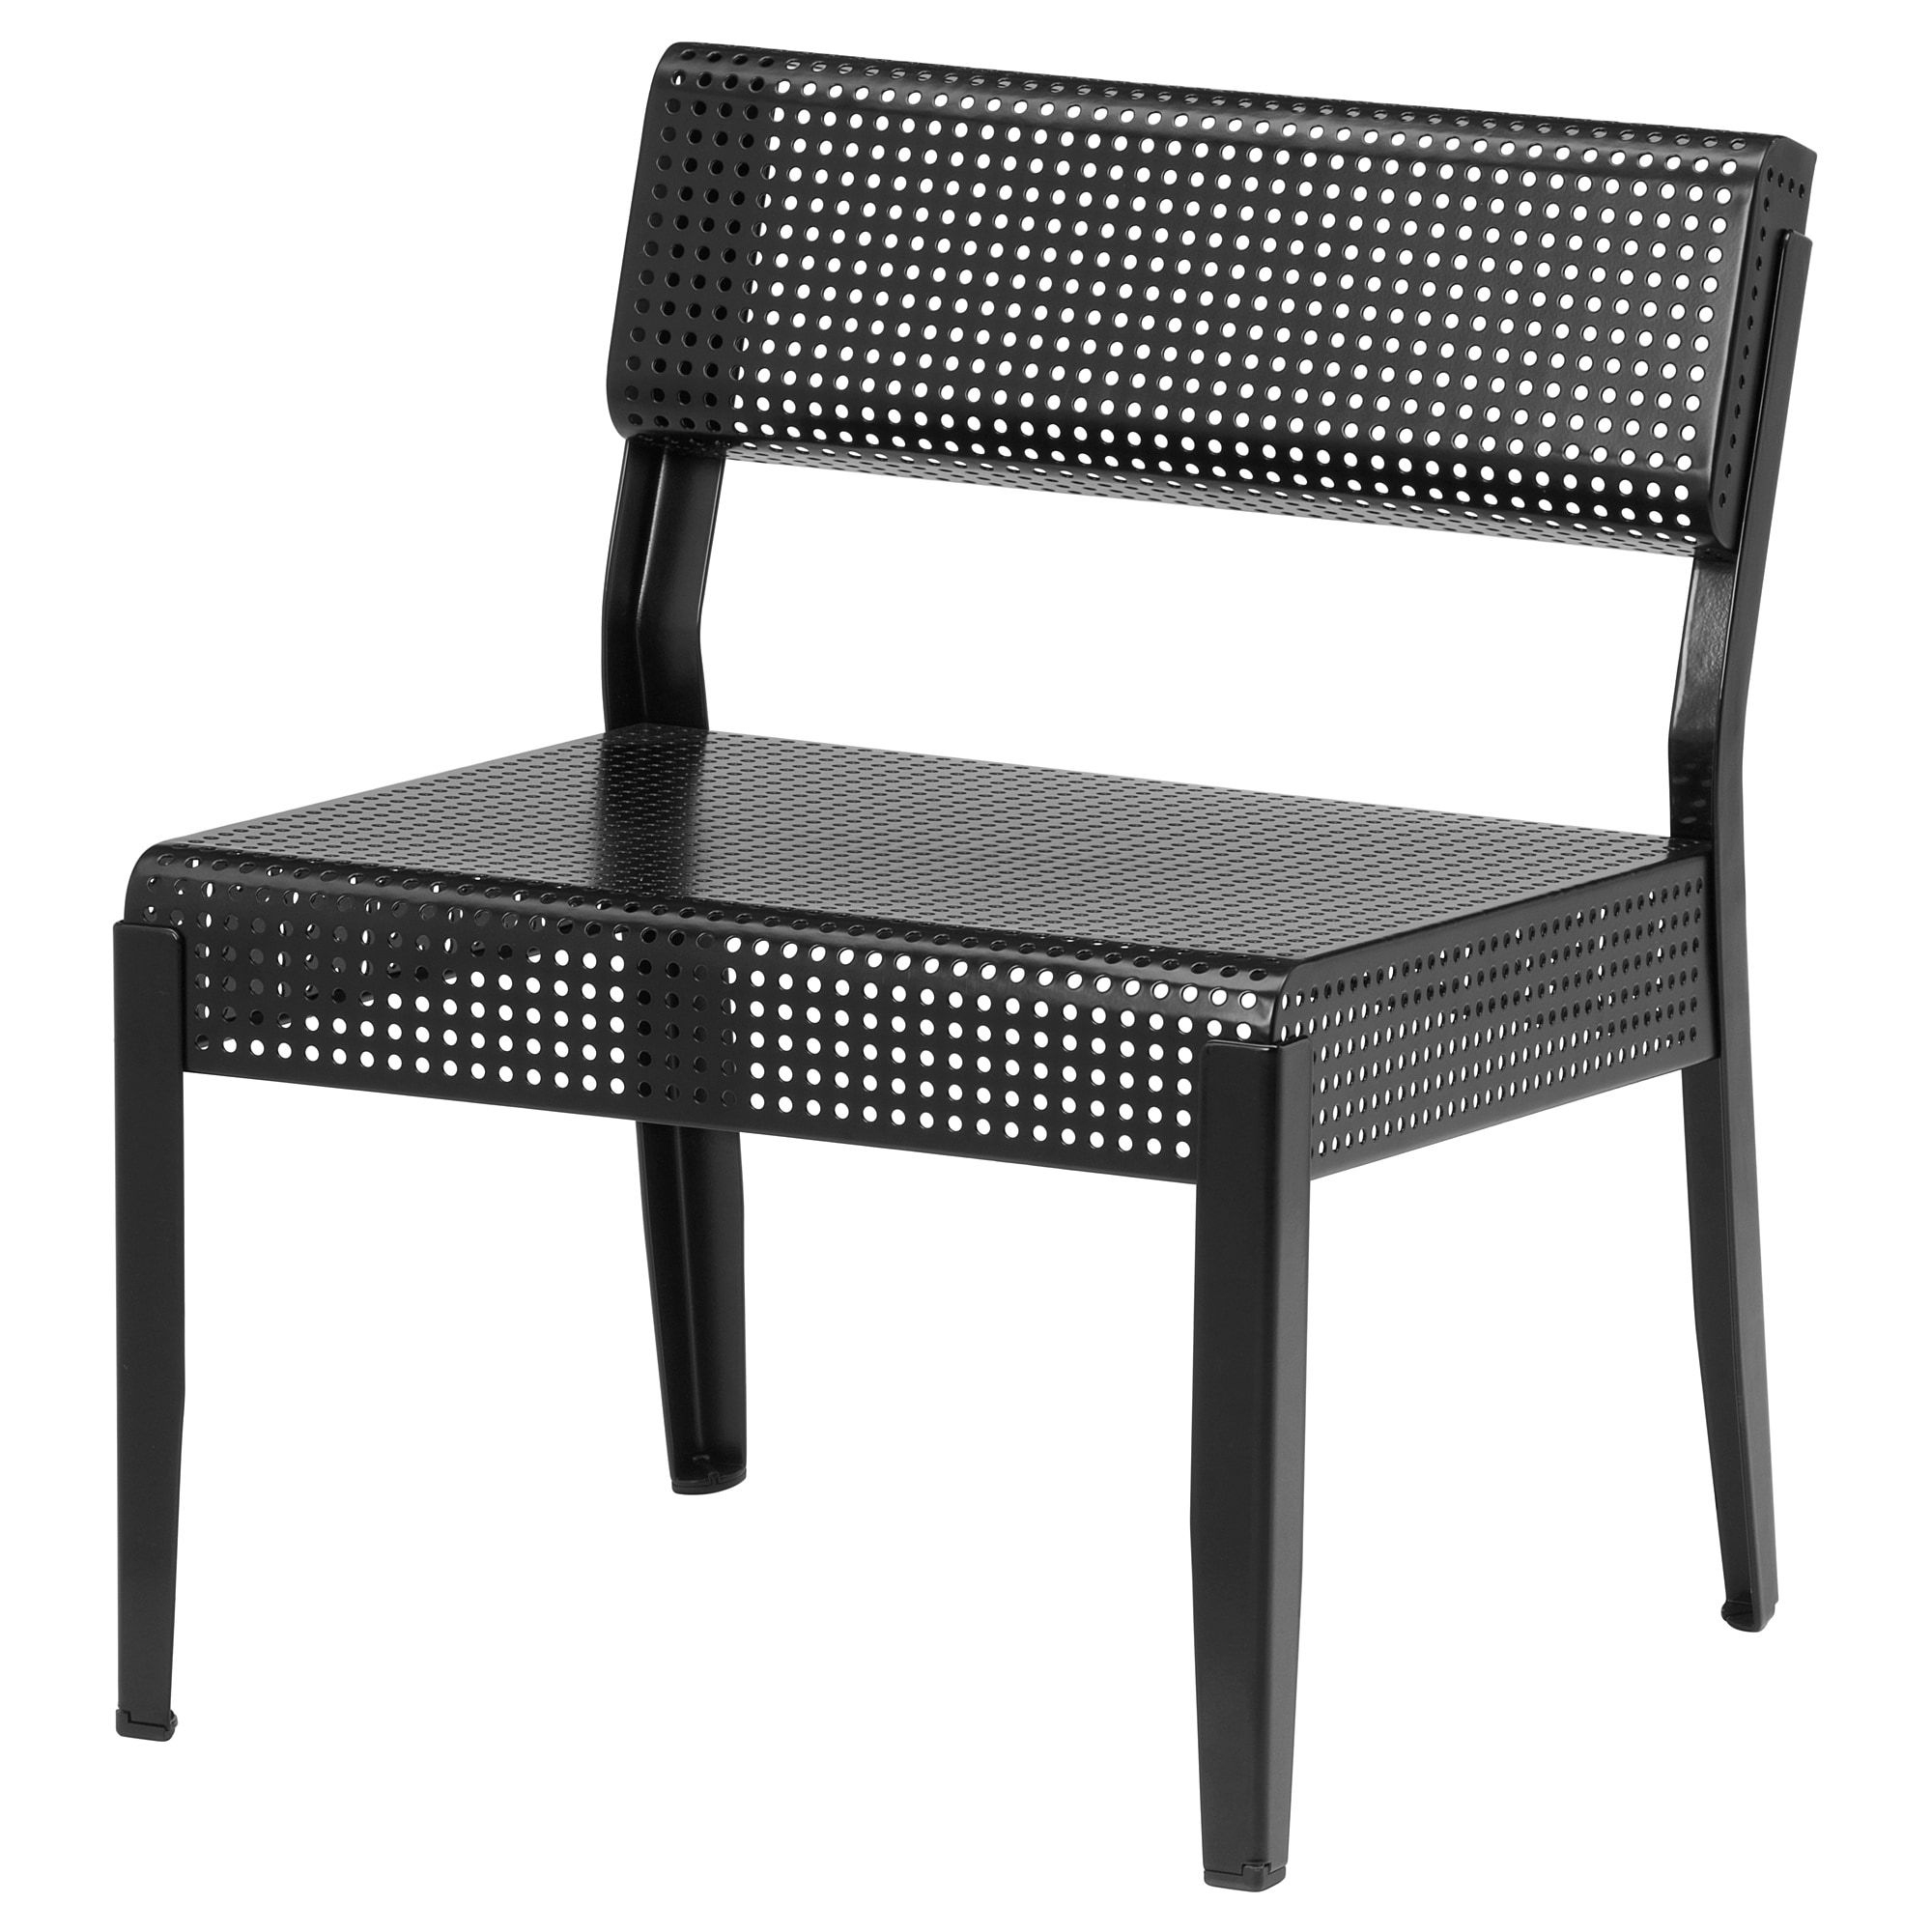 Mobilier Et Décoration - Intérieur Et Extérieur | Chaise ... pour Table Jardin Plastique Ikea